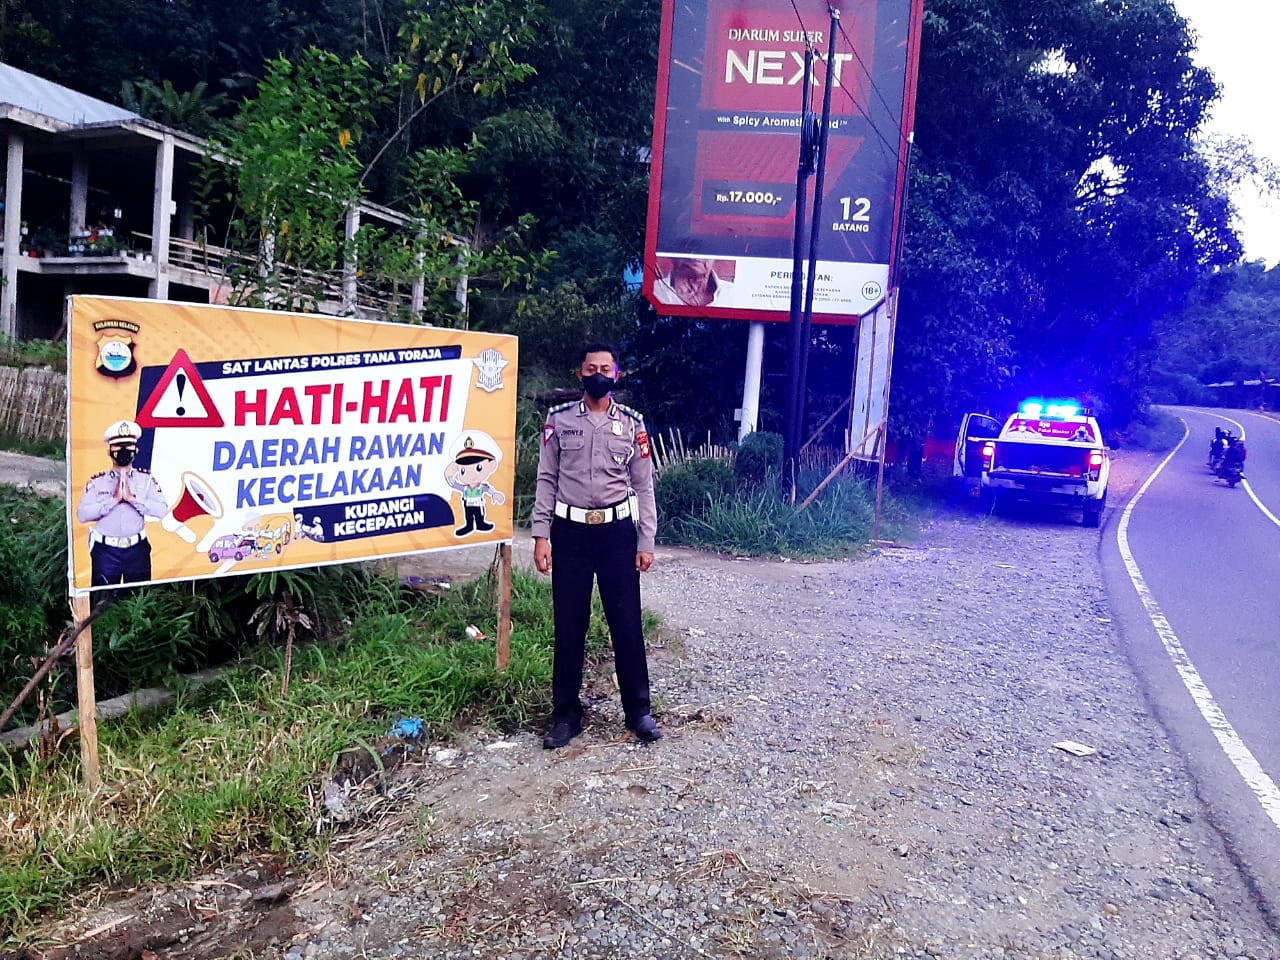 Sat Lantas Res Tana Toraja Pemasangan Rambu Hati Hati Pada Daerah Rawan Kecelakaan POLRES TANA